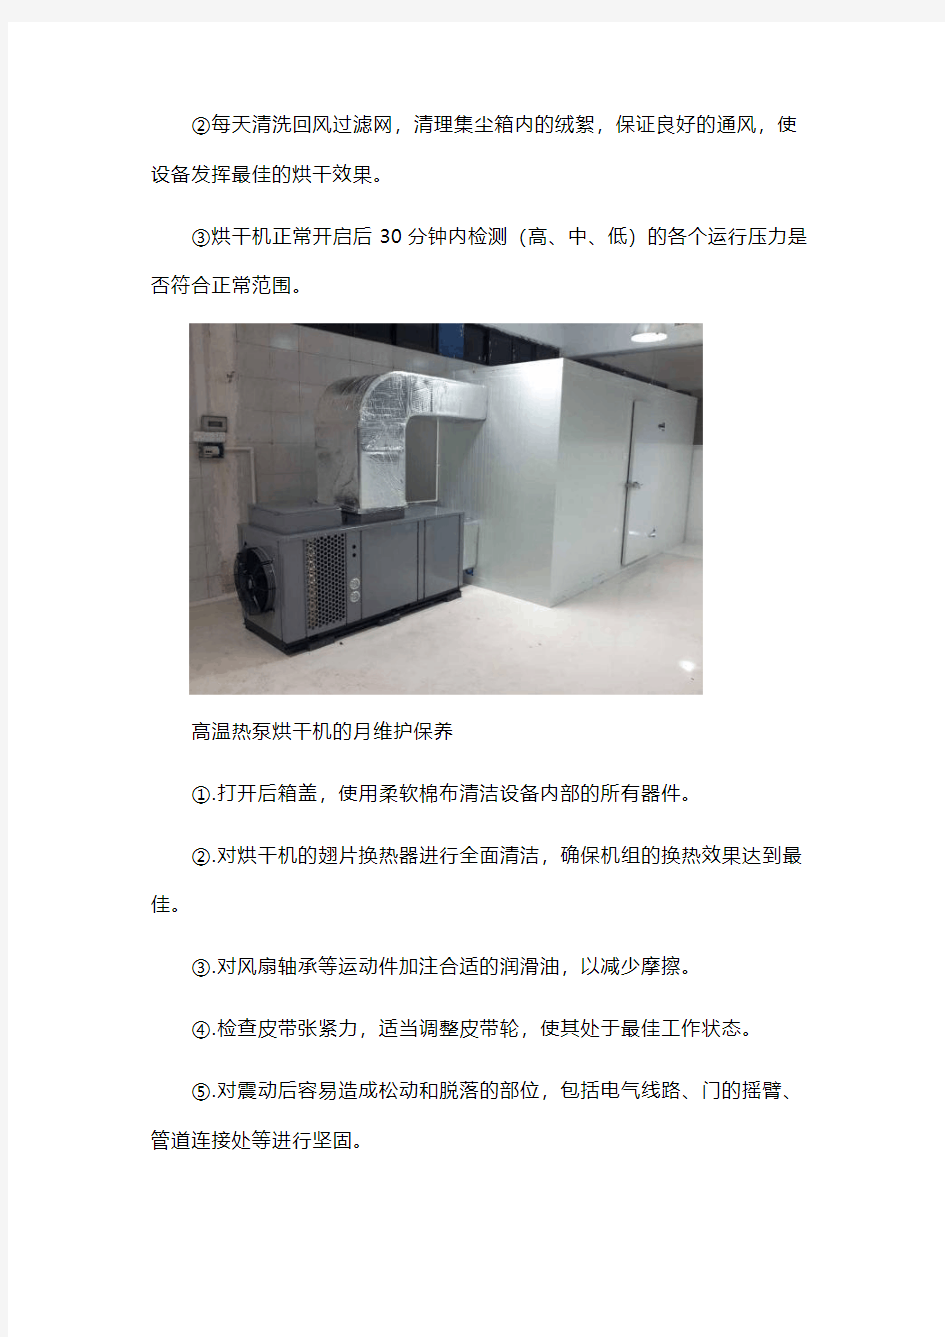 空气源热泵烘干机产品介绍